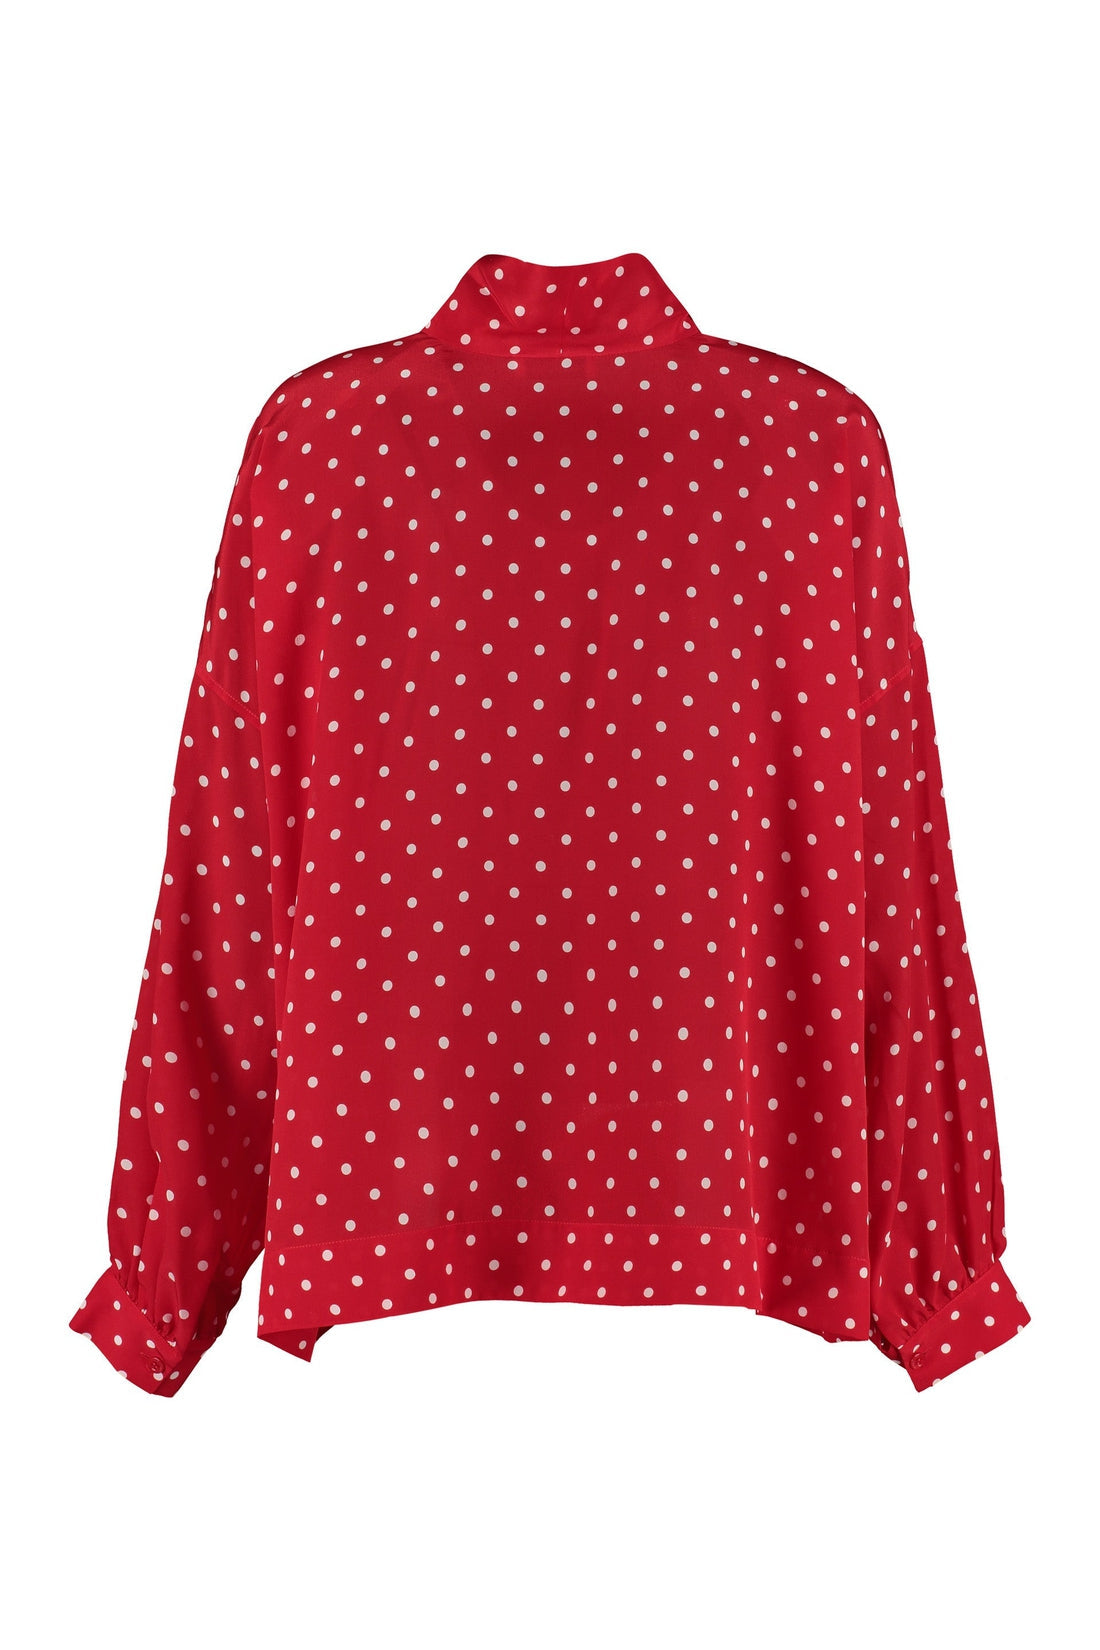 Balenciaga-OUTLET-SALE-Polka dot silk blouse-ARCHIVIST